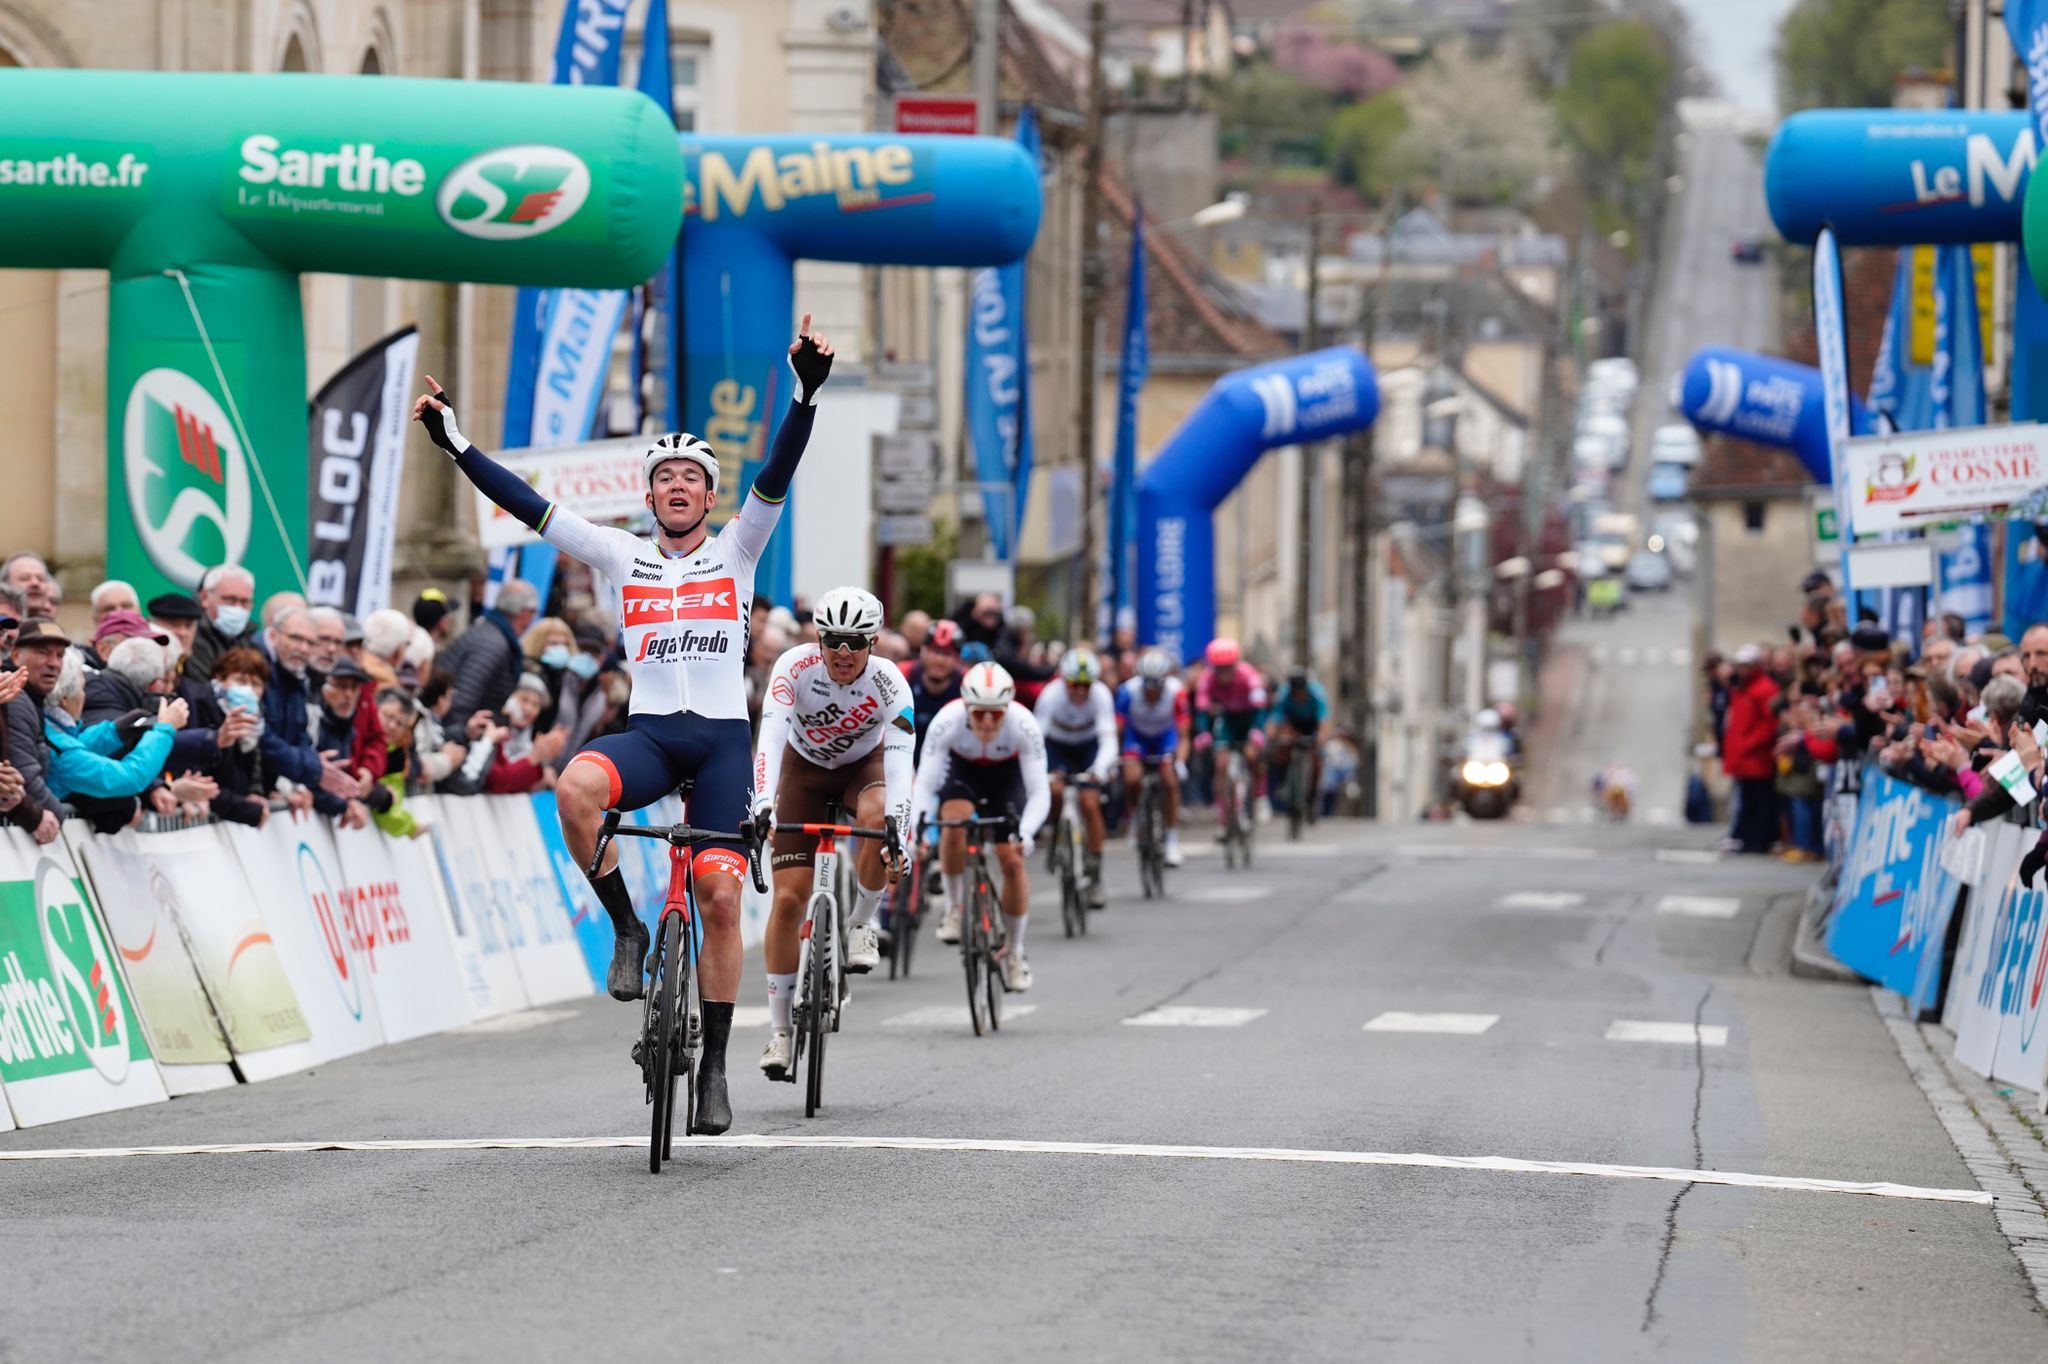 Мадс Педерсен выиграл первый этап велогонки Circuit Cycliste Sarthe — Pays de la Loire